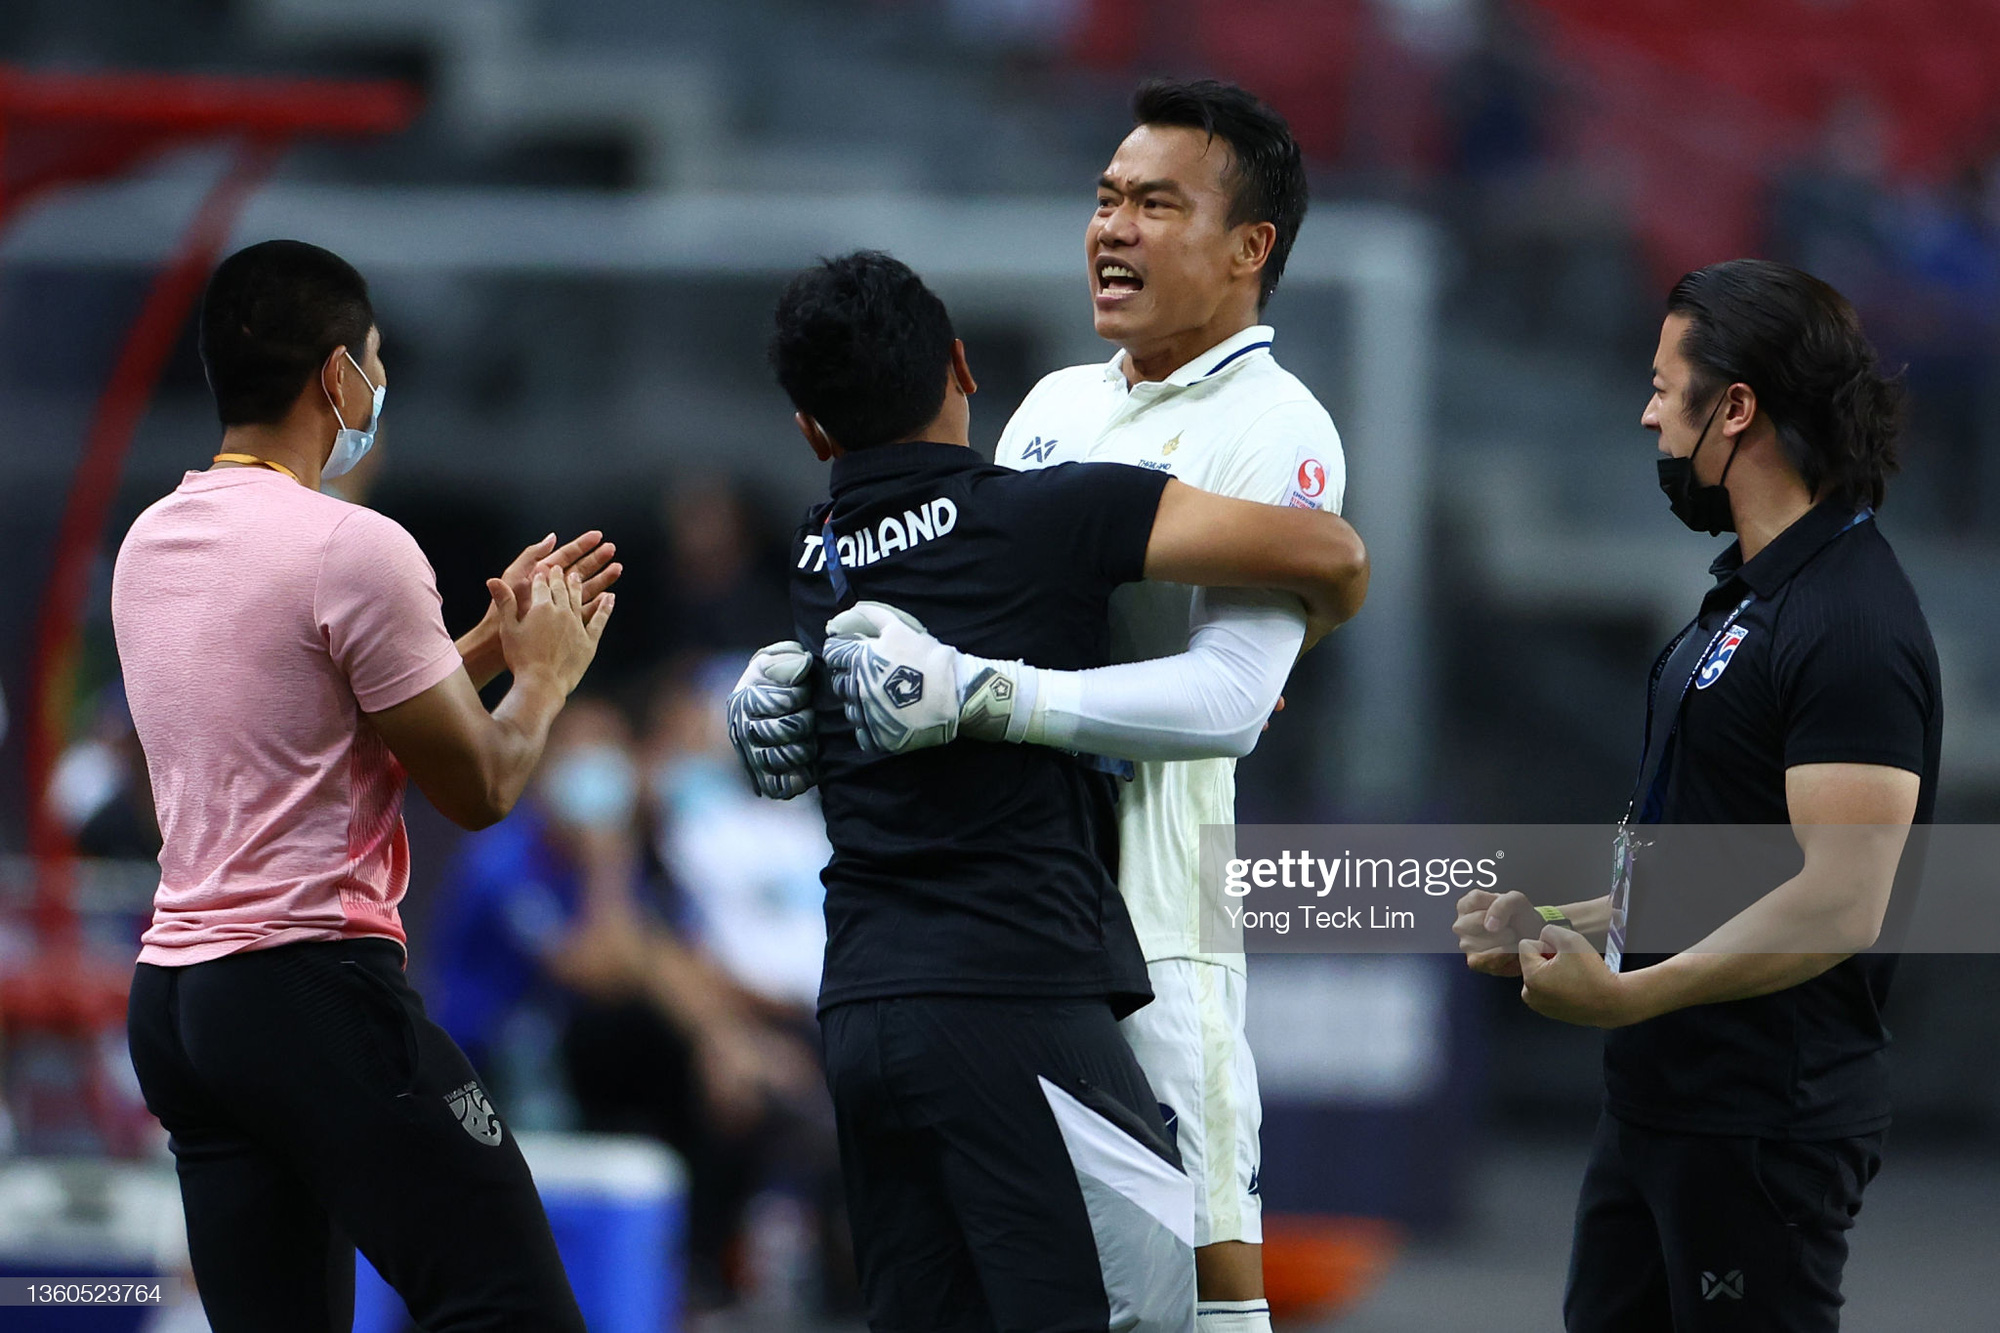 Trọng tài V.League lý giải việc thủ môn Thái Lan chỉ nhận thẻ vàng dù lao ra khỏi vòng cấm để phạm lỗi với Văn Toàn - Ảnh 5.